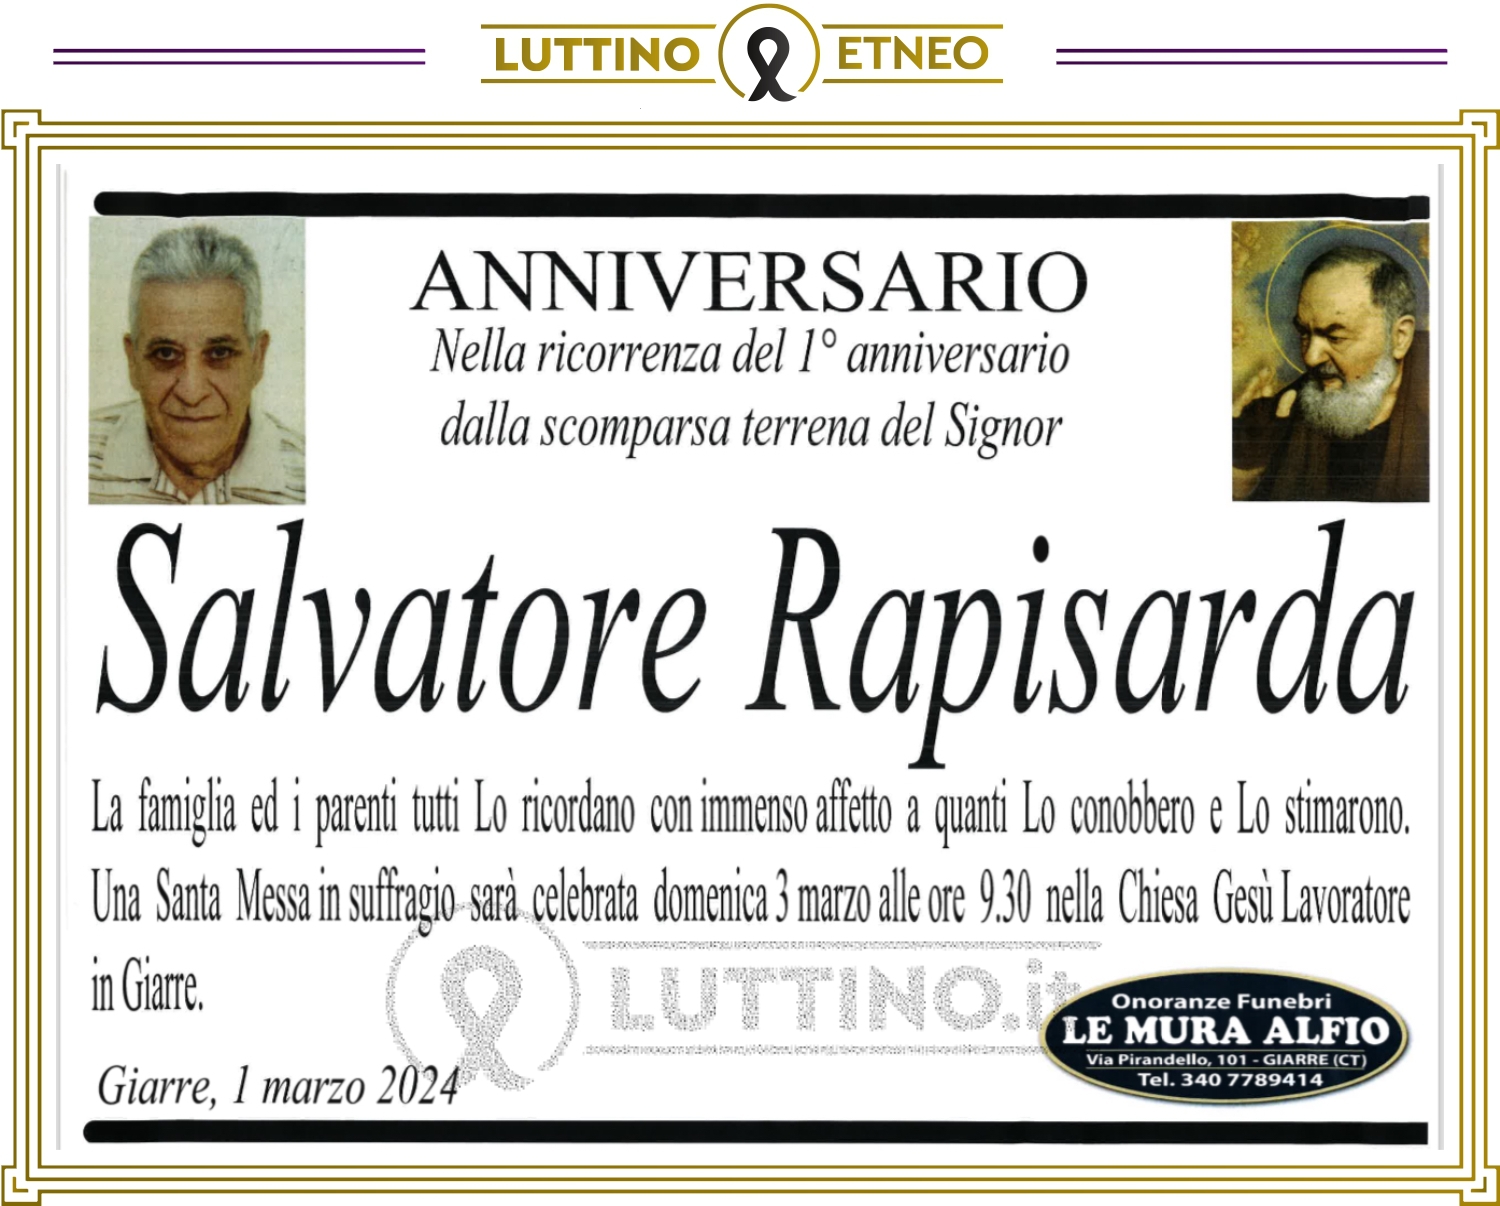 Salvatore Rapisarda